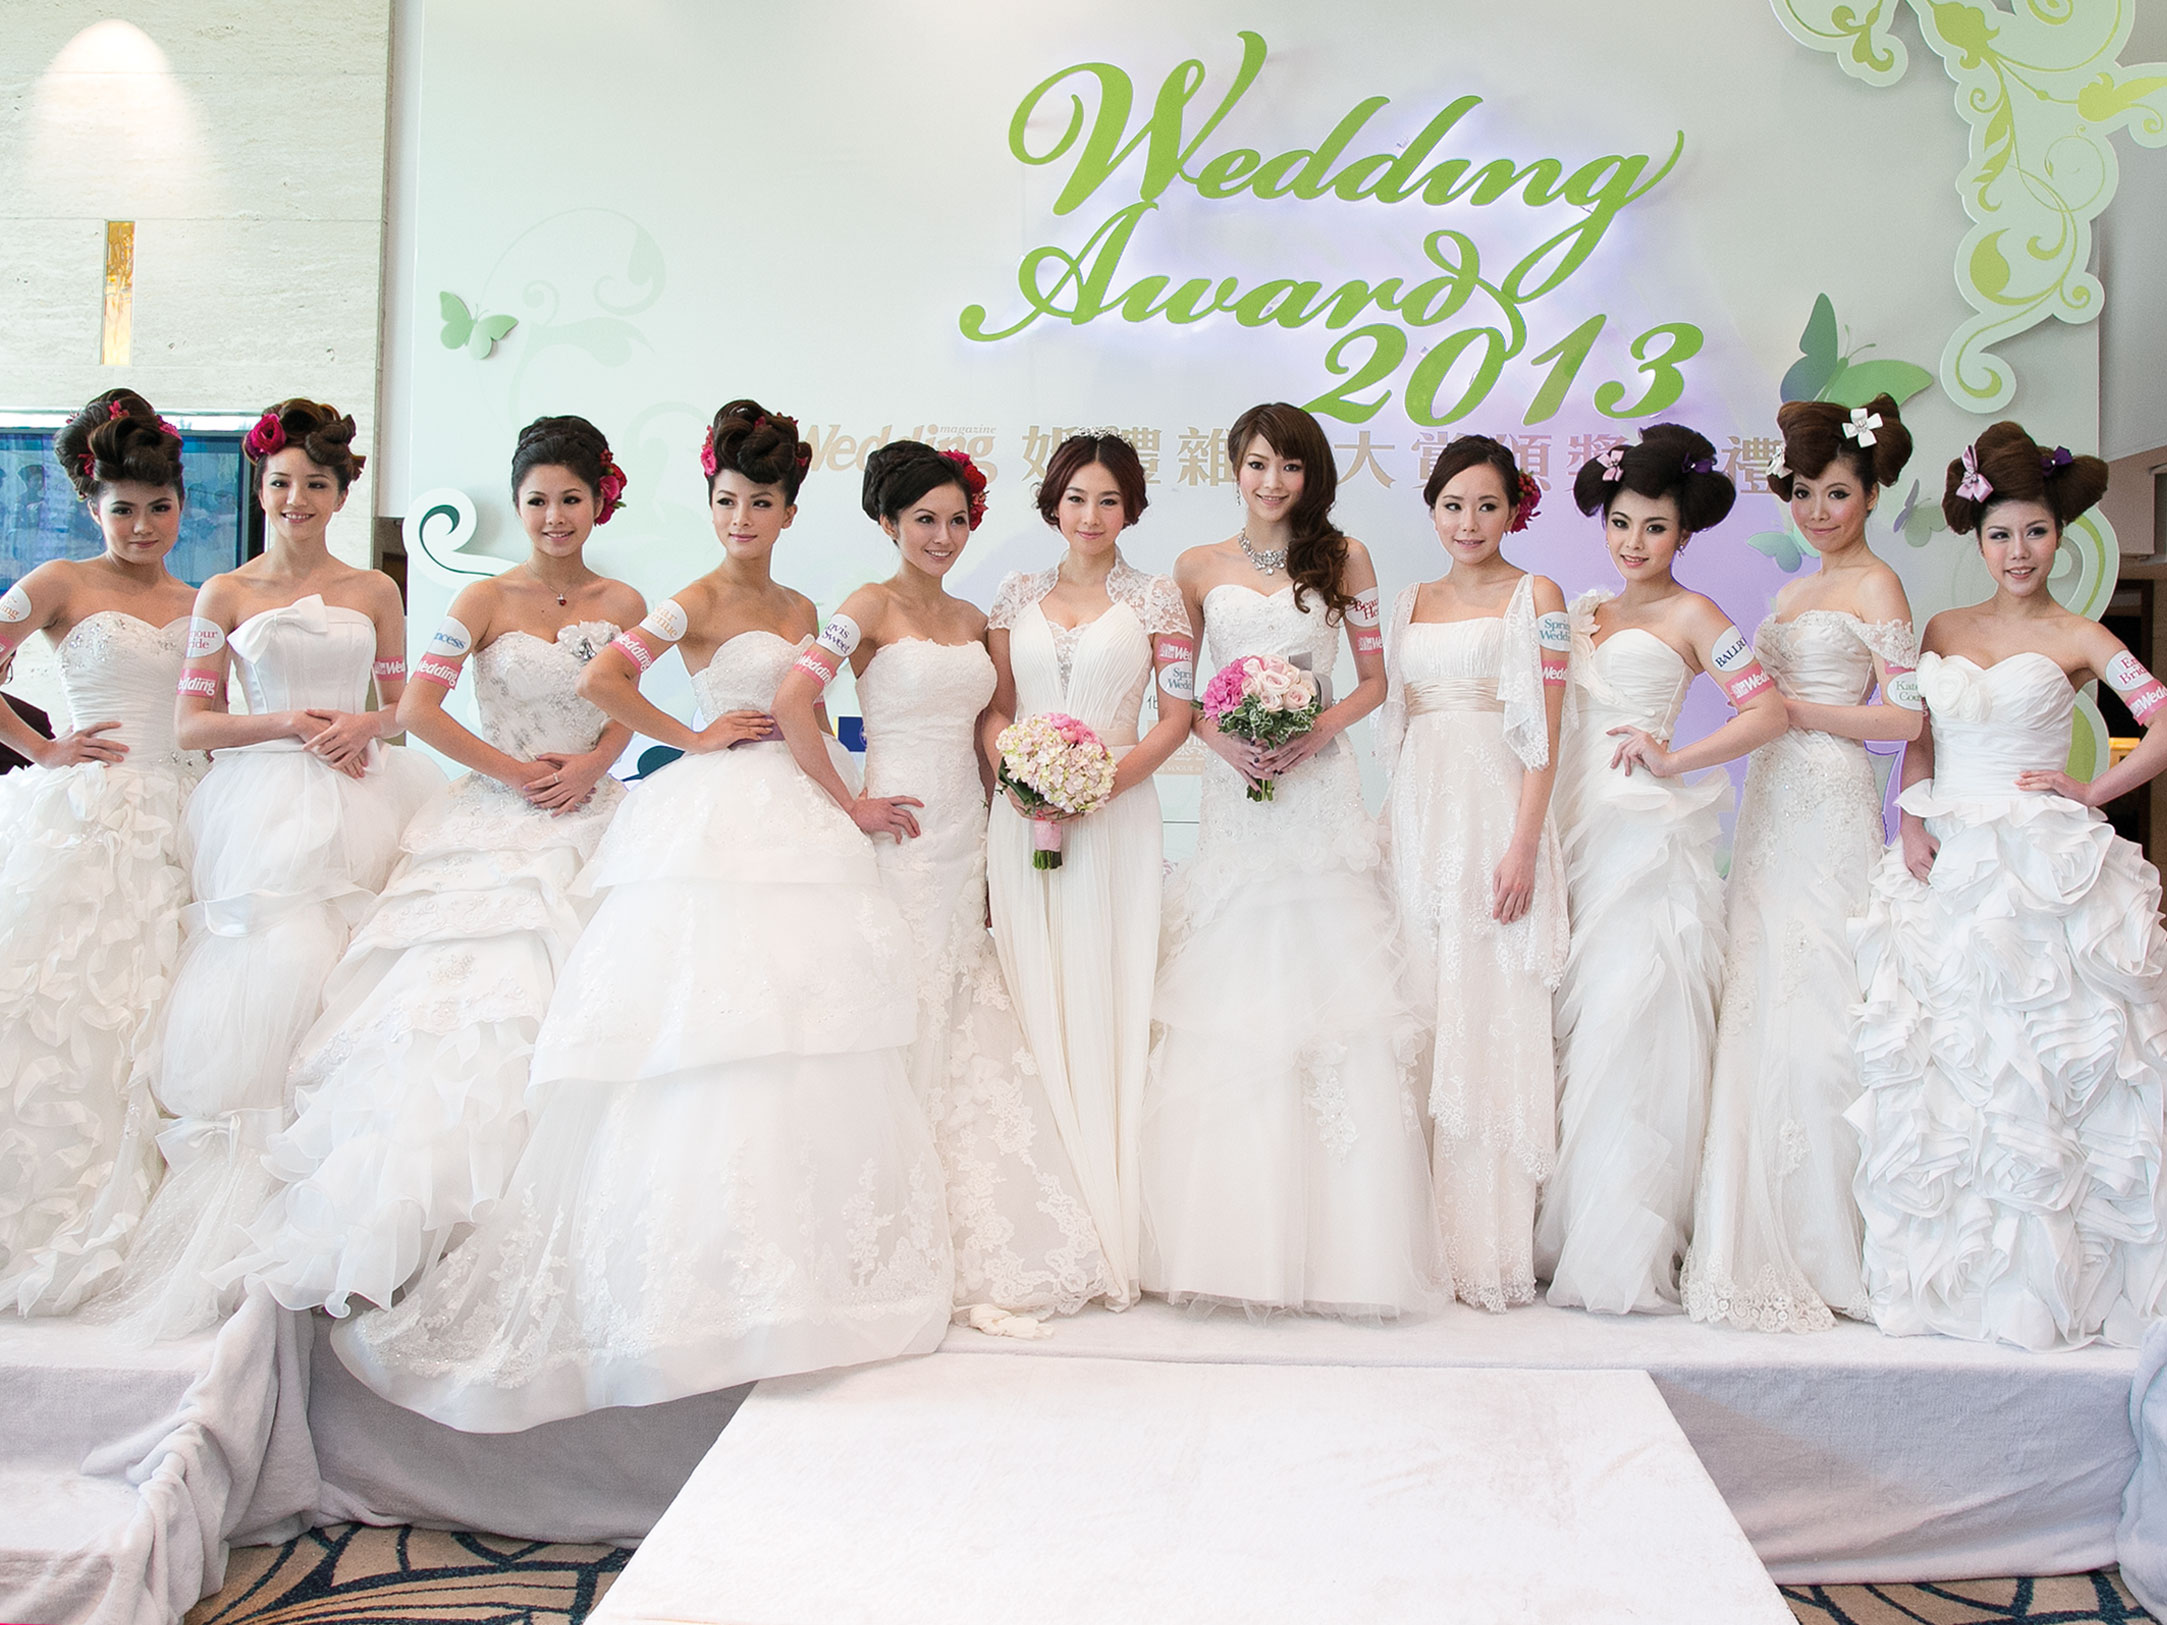 為婚禮雜誌大賞2013頒獎典禮揭開序幕的「春日濃情婚紗匯演」，由連詩雅與賈曉晨連同九位模特兒展示多間婚紗公司瑰麗夢幻的婚紗。